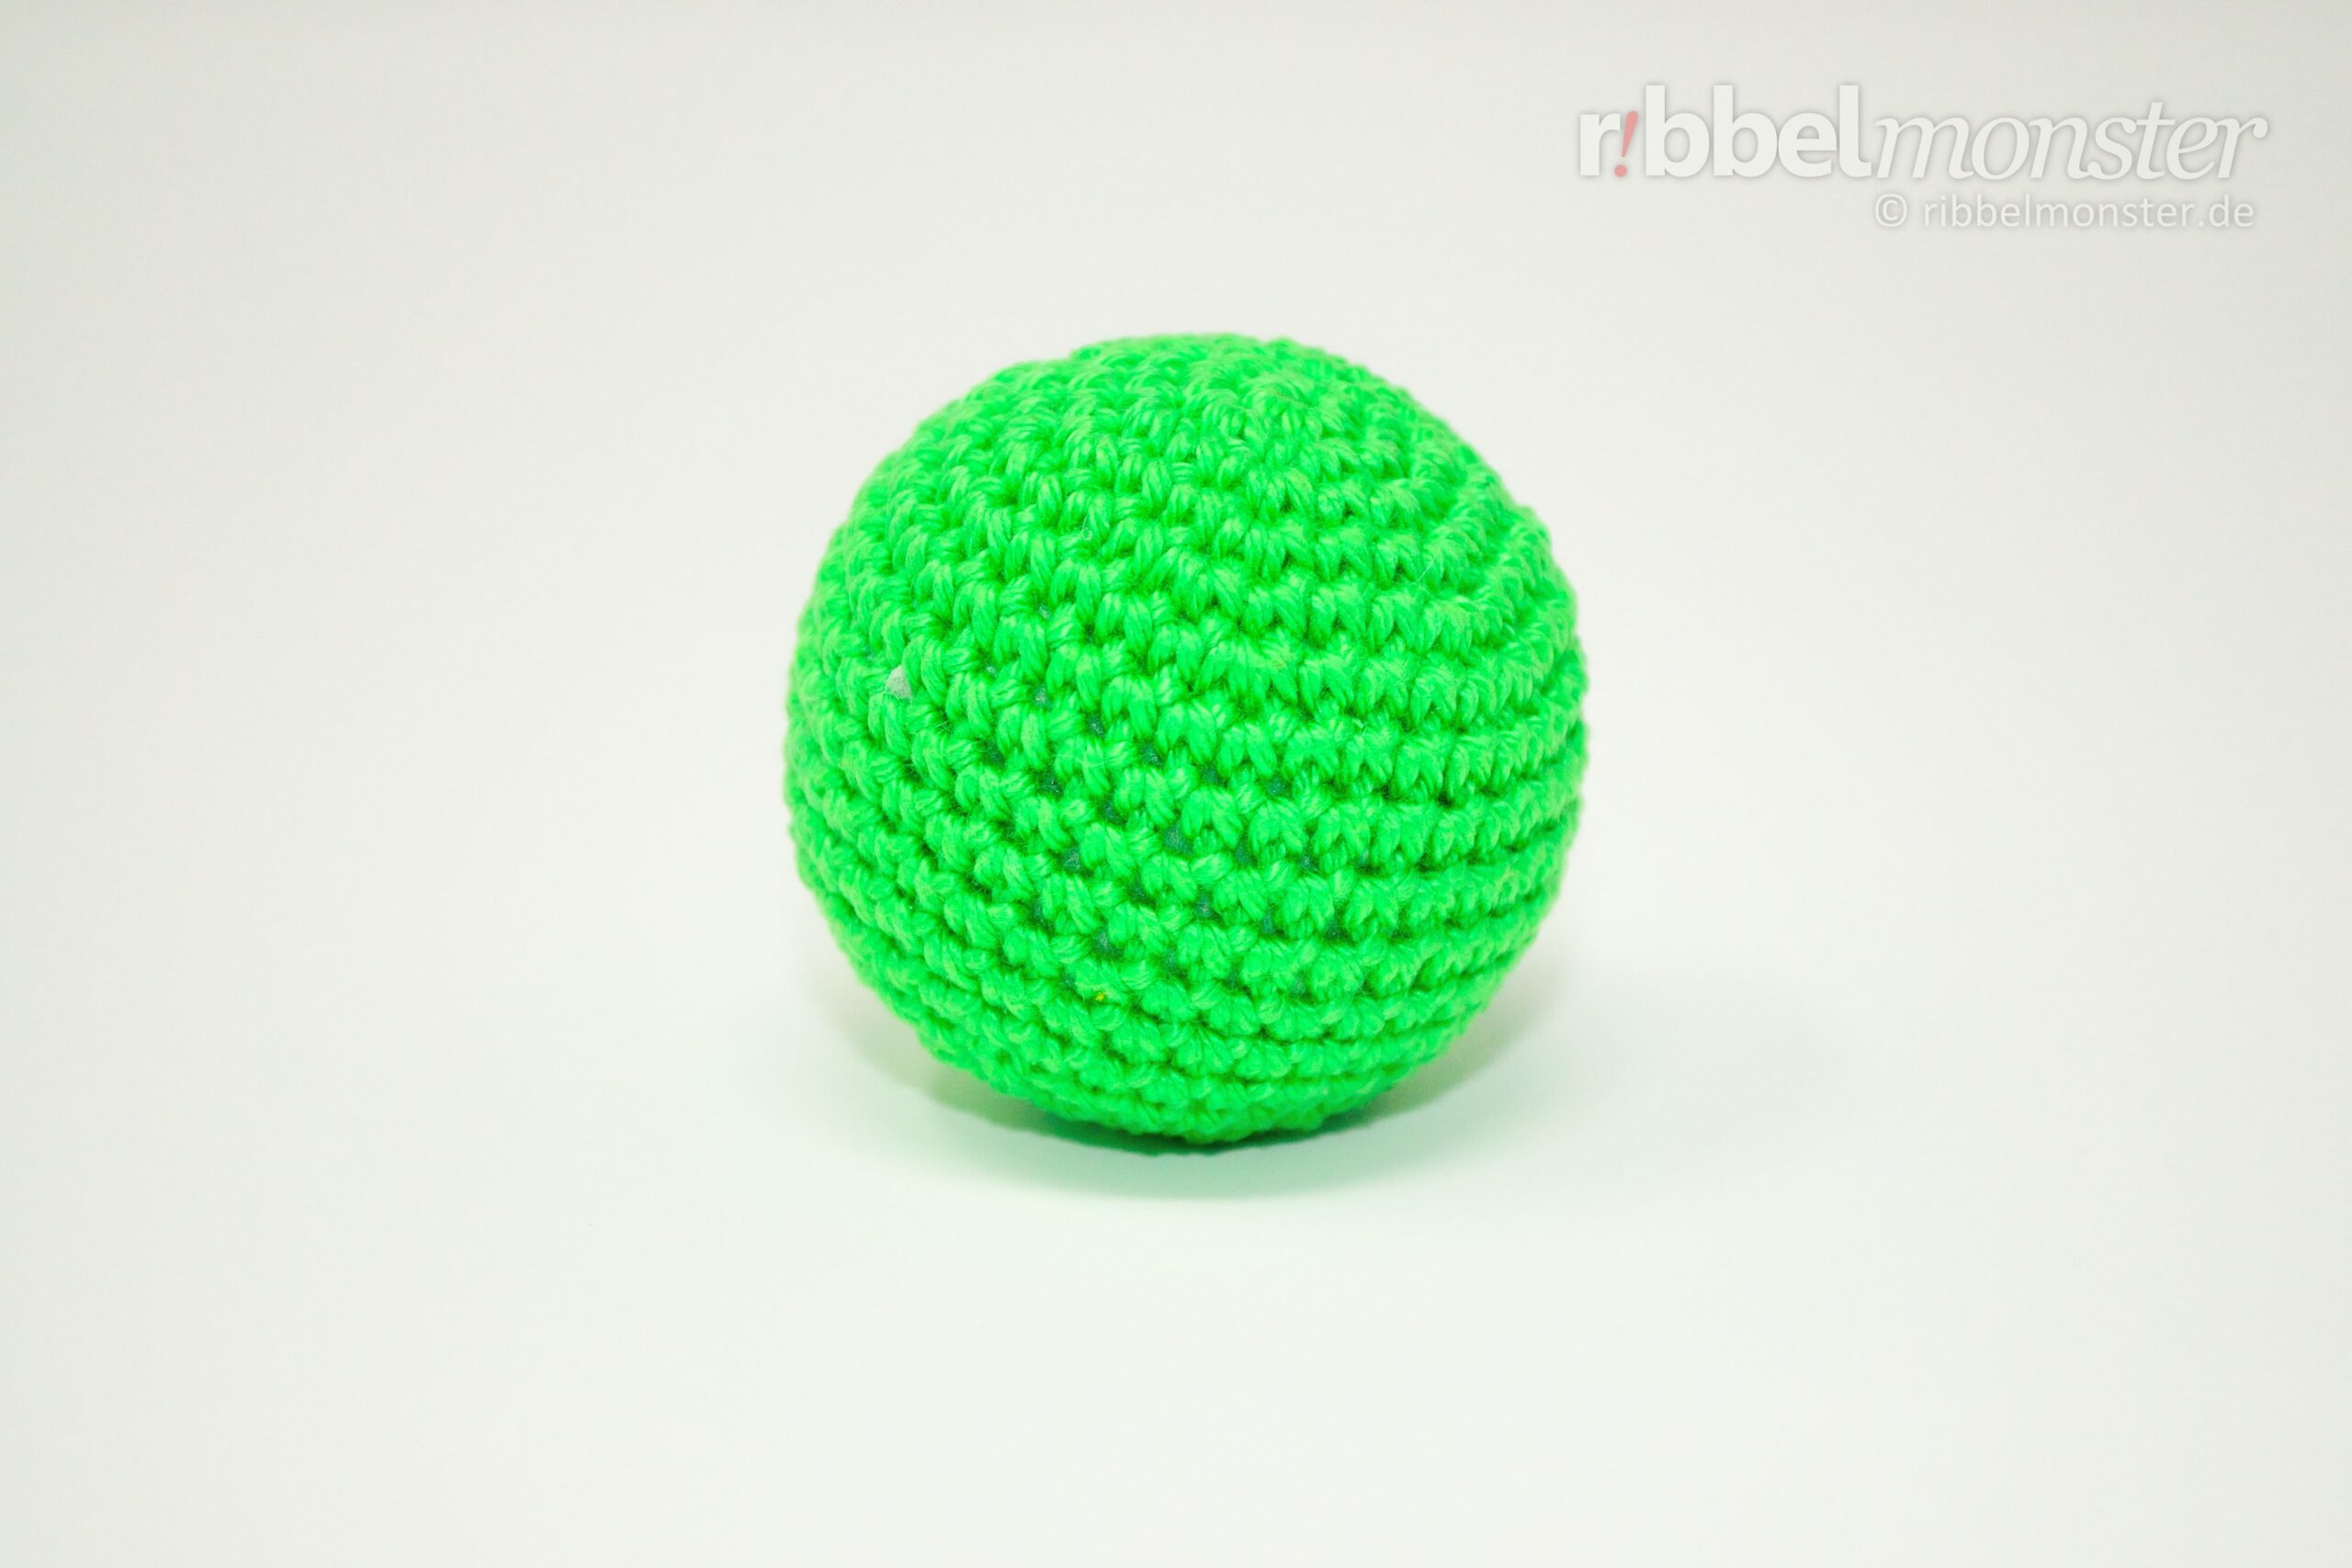 Amigurumi - einfachen kleinen Ball häkeln - kostenlose Häkelanleitung - gratis Anleitung